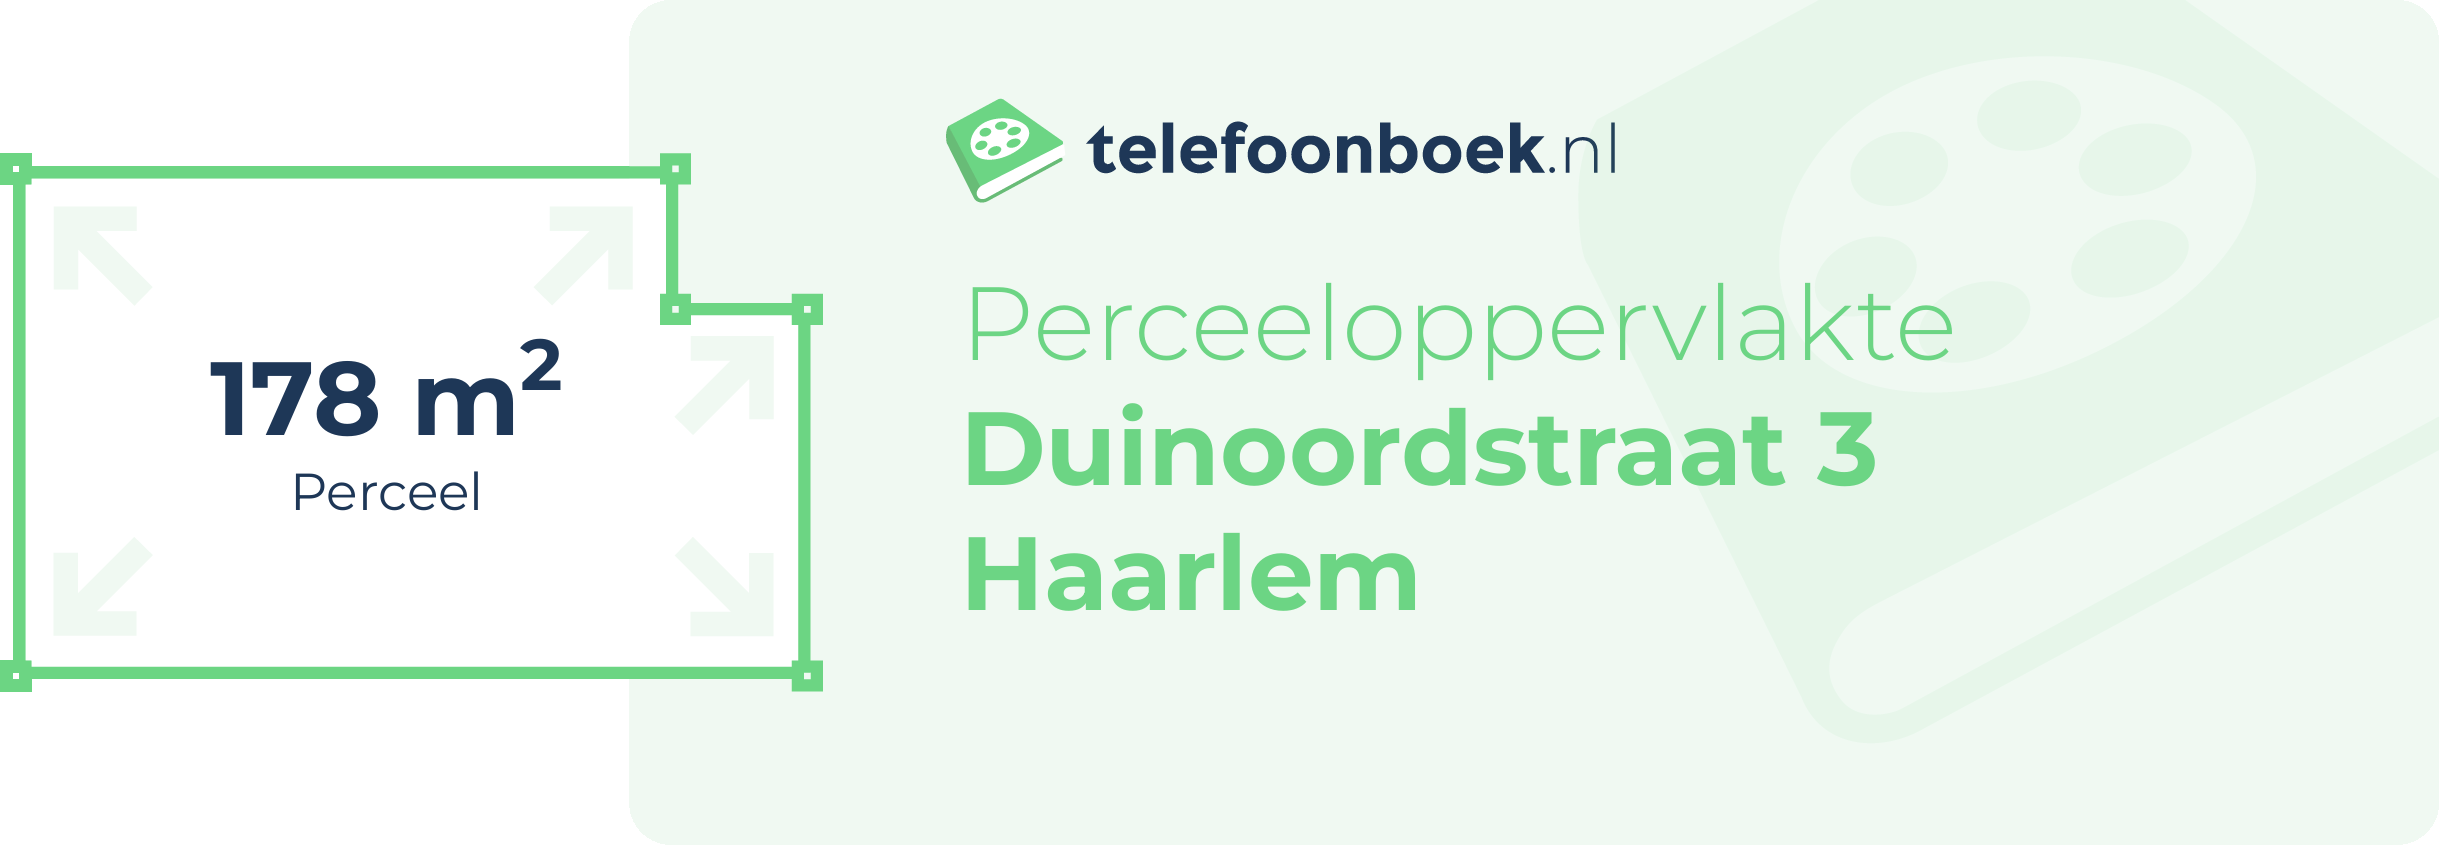 Perceeloppervlakte Duinoordstraat 3 Haarlem